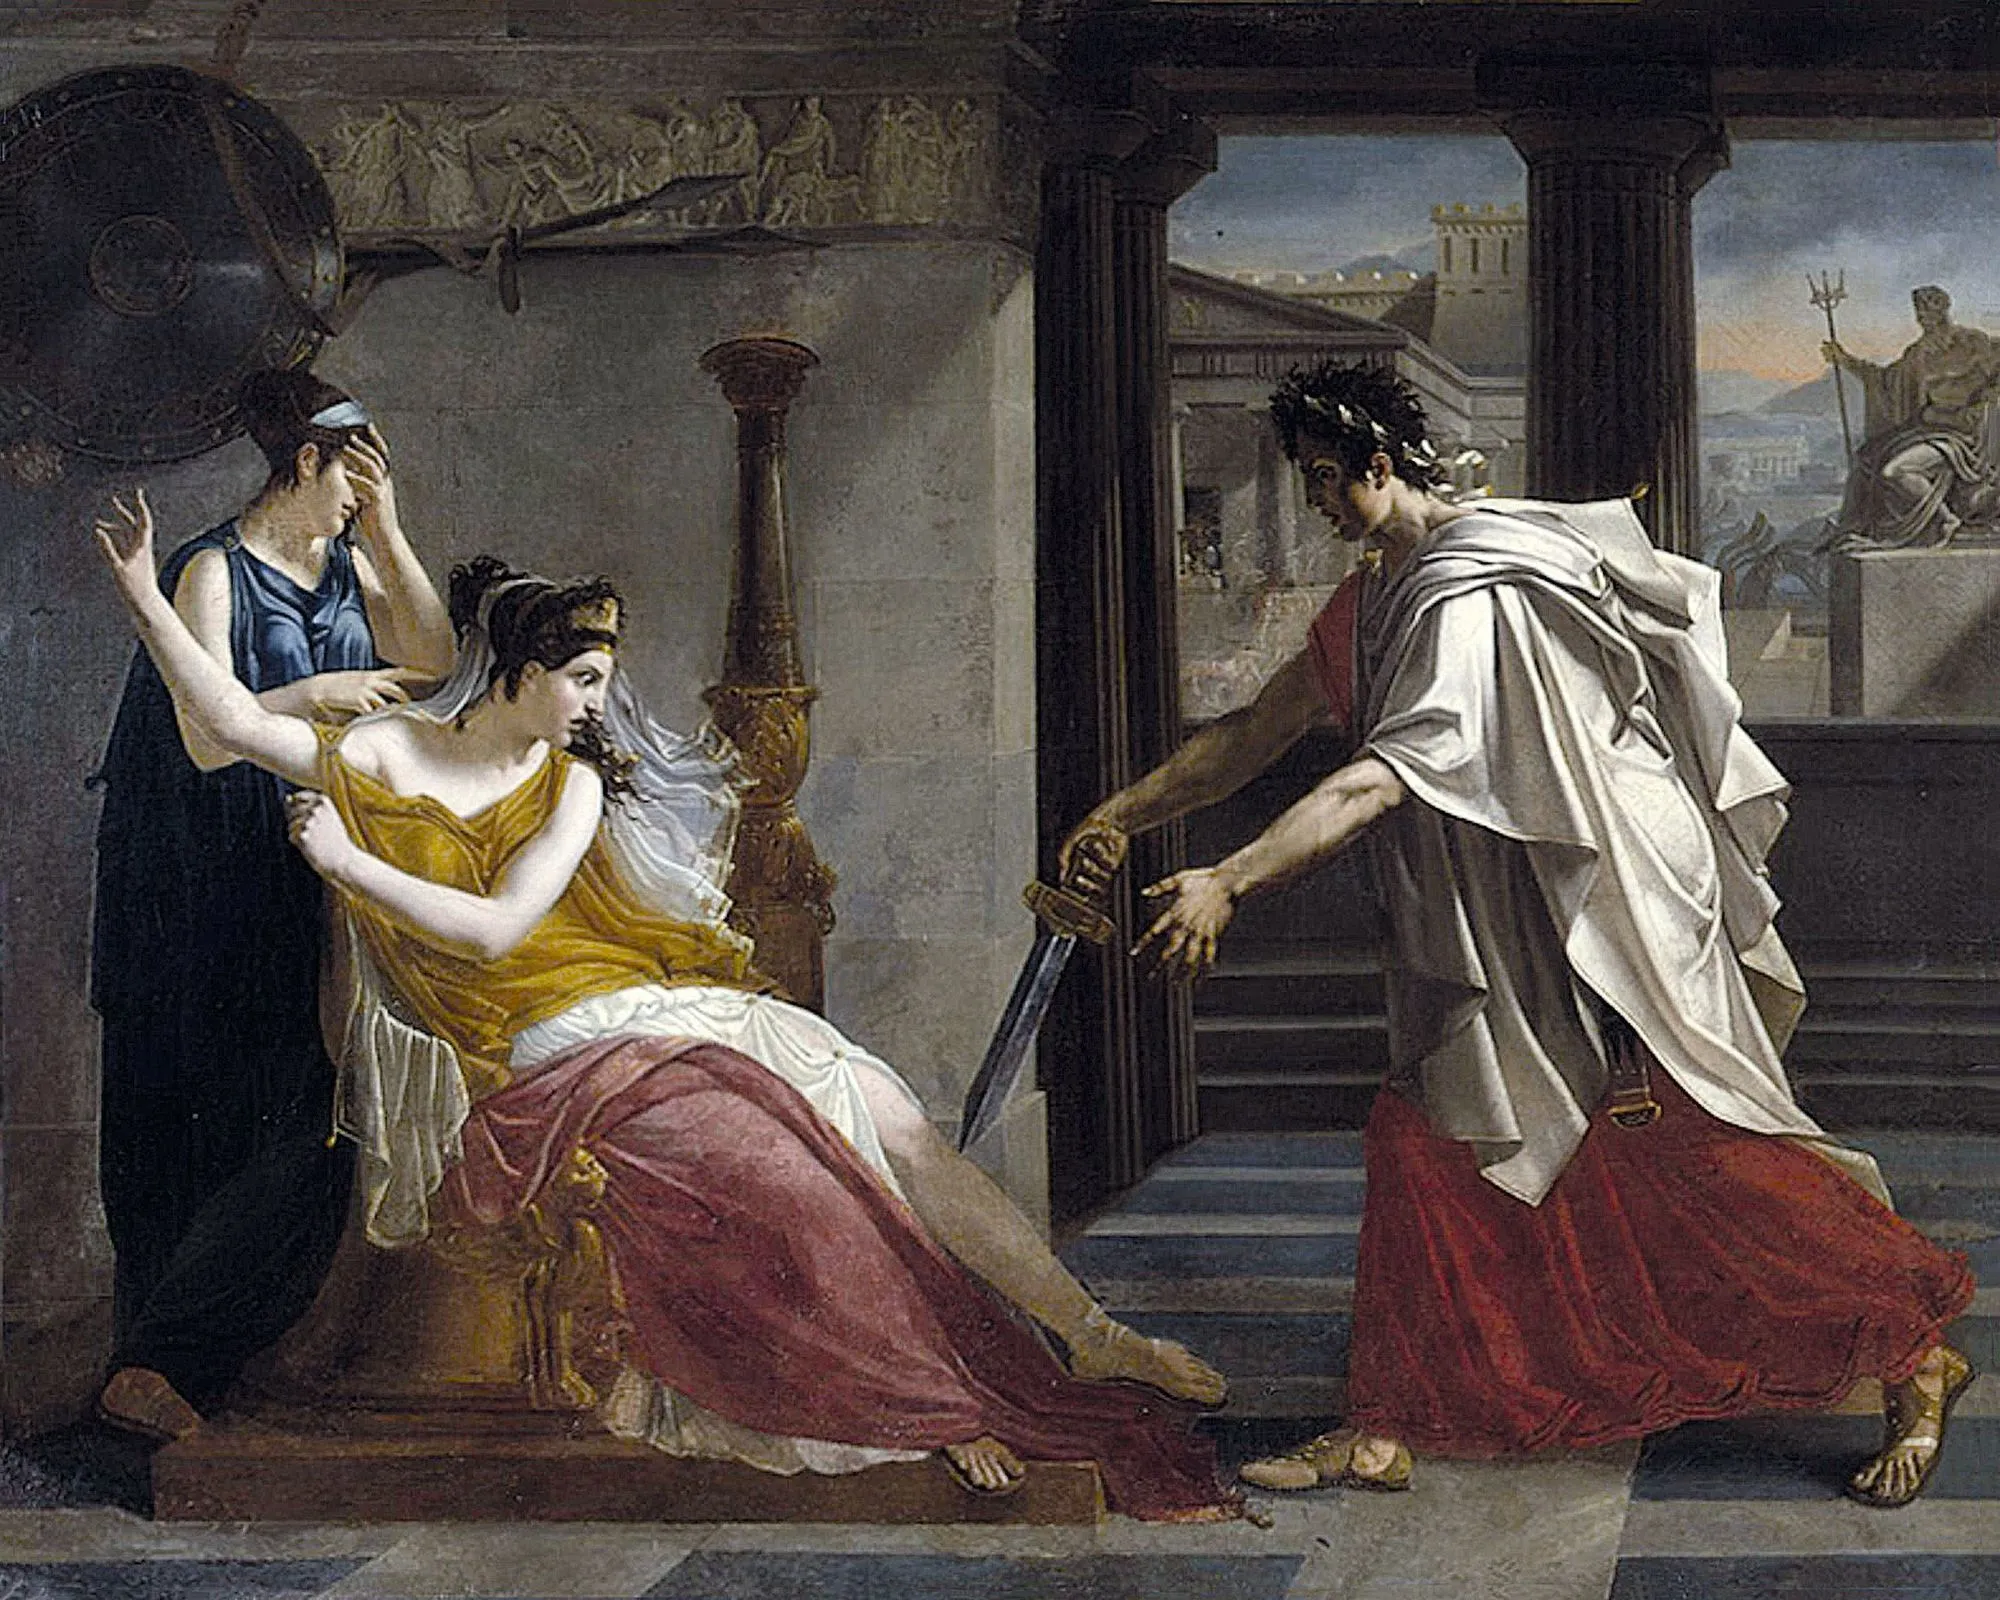 Pierre-Narcisse Guérin, Hermione rejetant Oreste, vers 1800, huile sur toile, musée des Beaux-Arts de Caen.